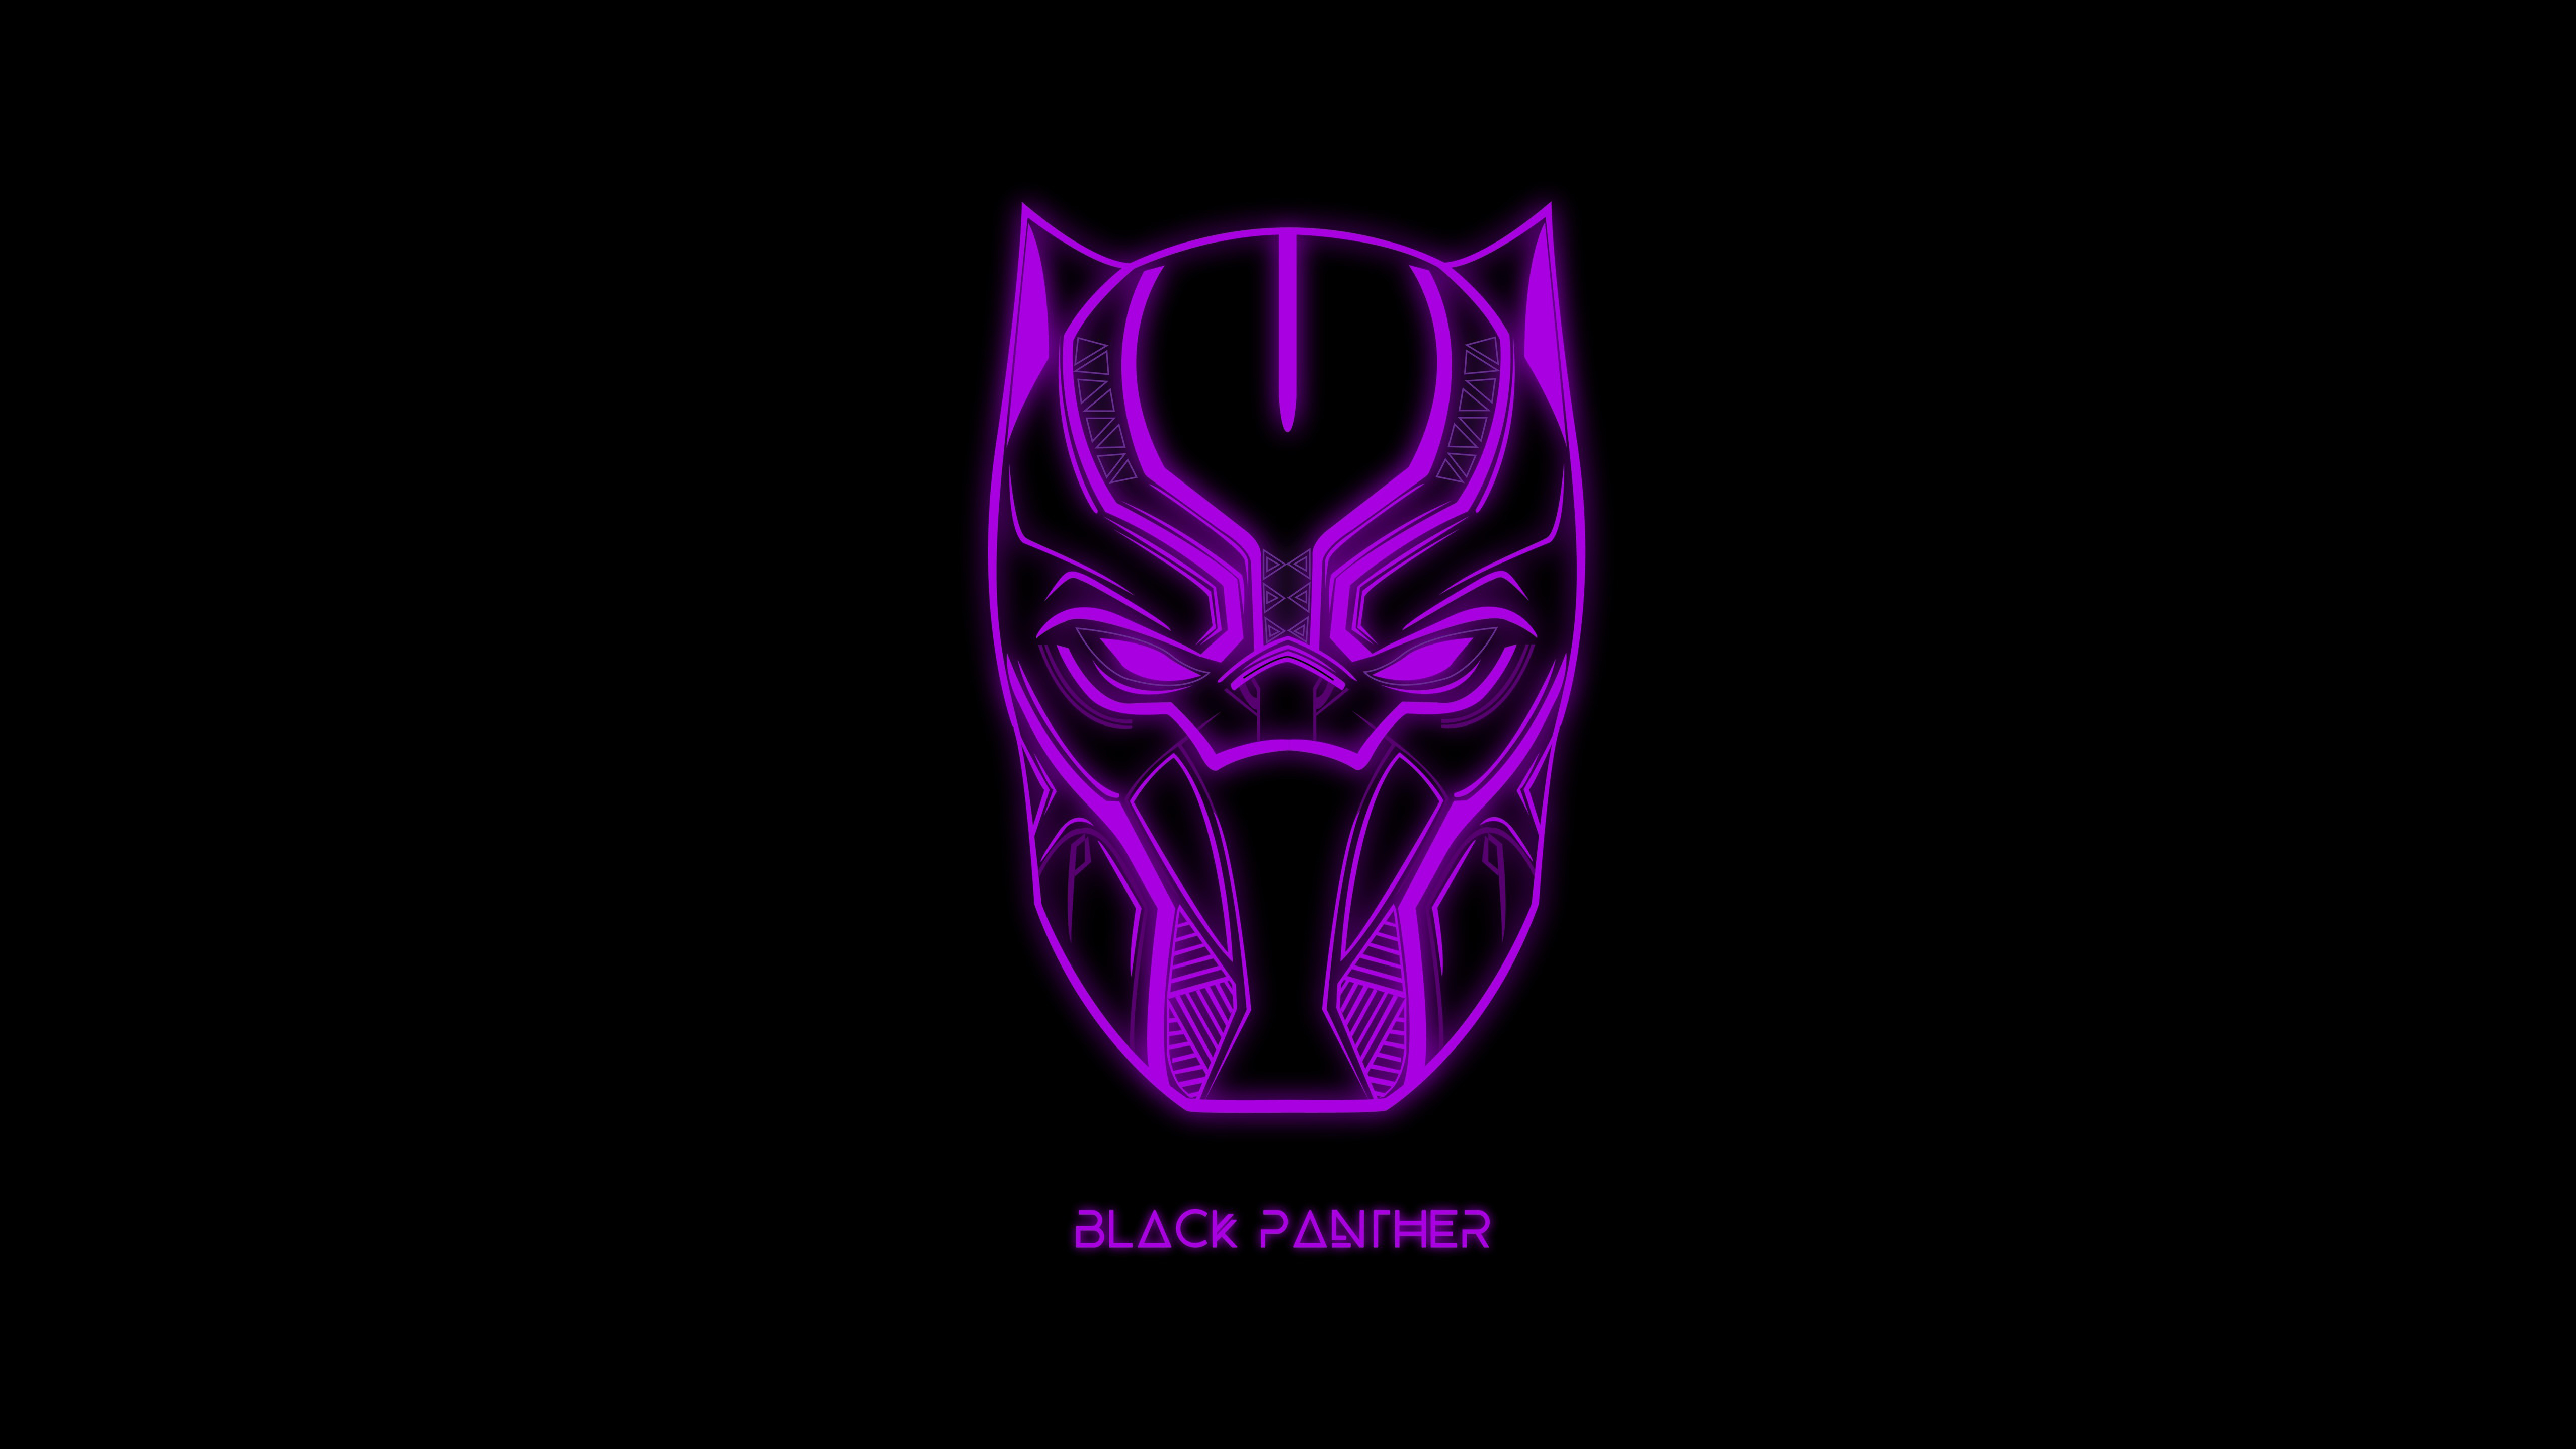 Black Panther Minimal Dark Artwork 5K Wallpapers